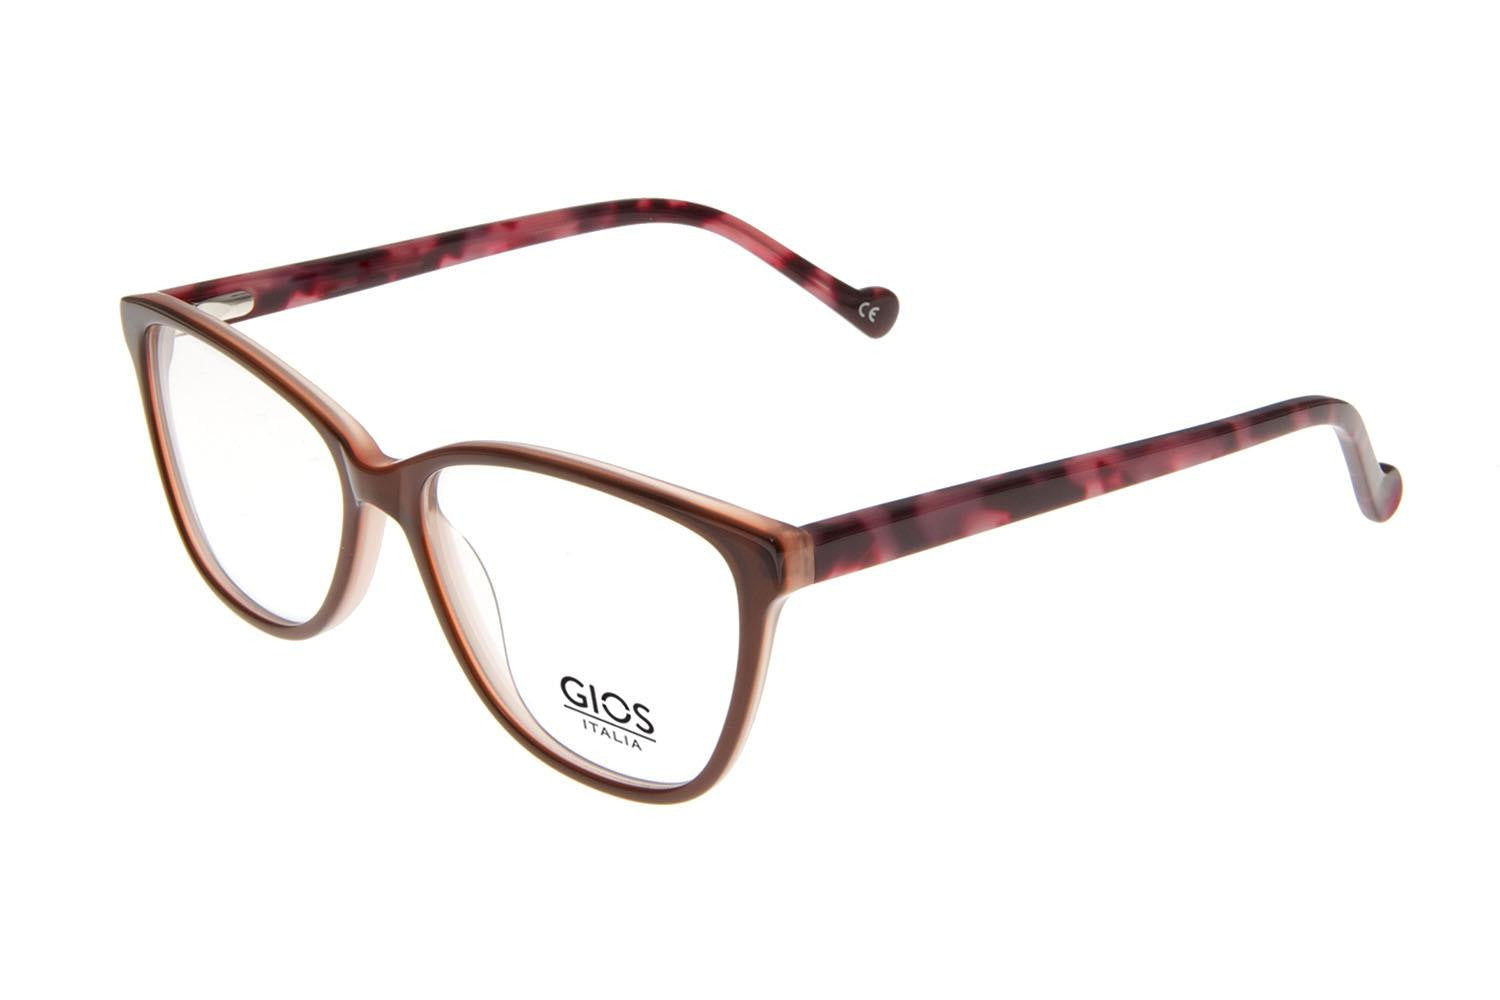 GIOS ITALIA Eyeglasses GRF500096 - Go-Readers.com